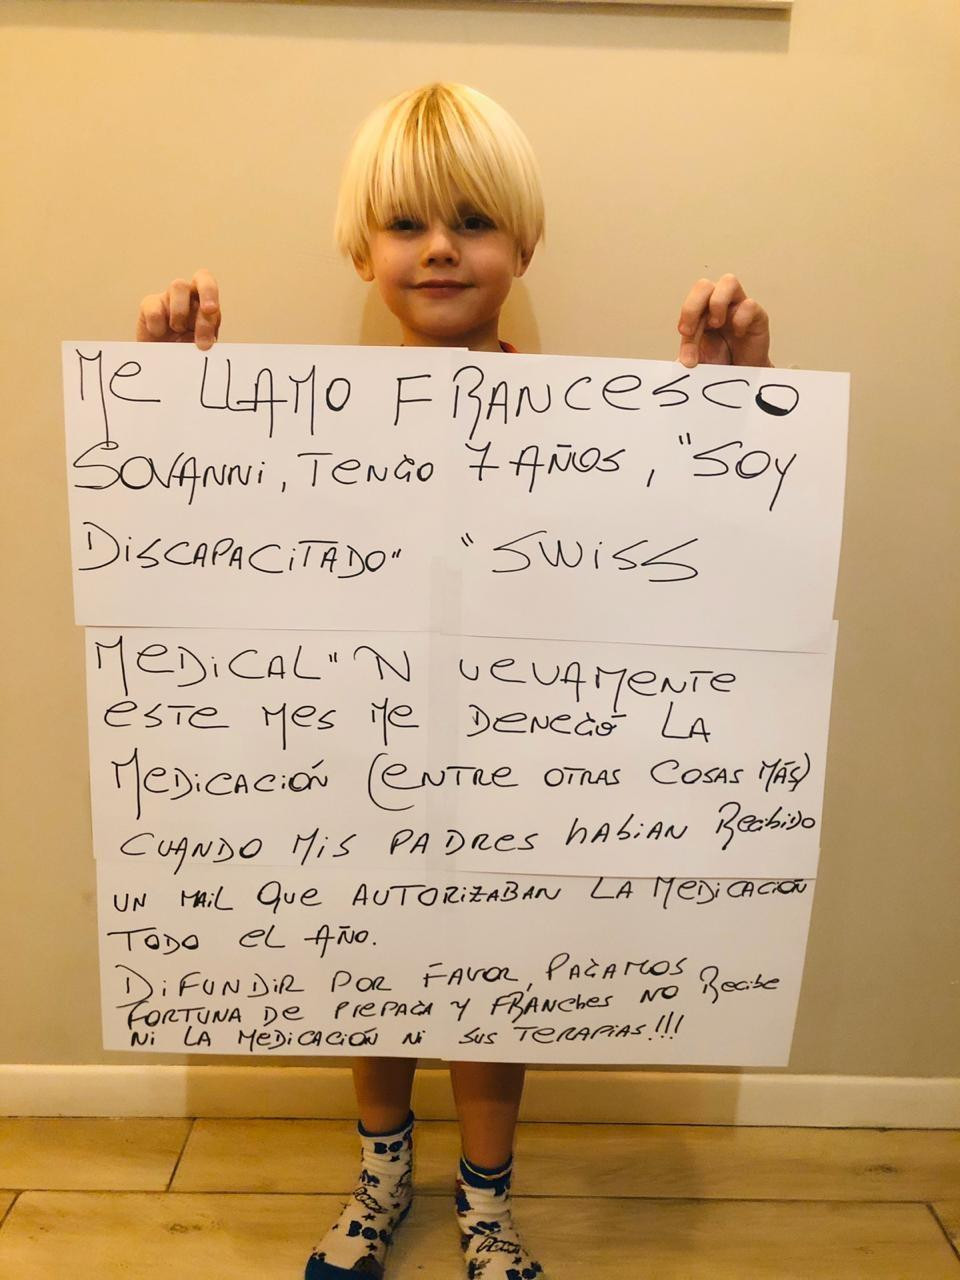 Francesco Sovanni, nene de Lanús que necesita tratamiento especial